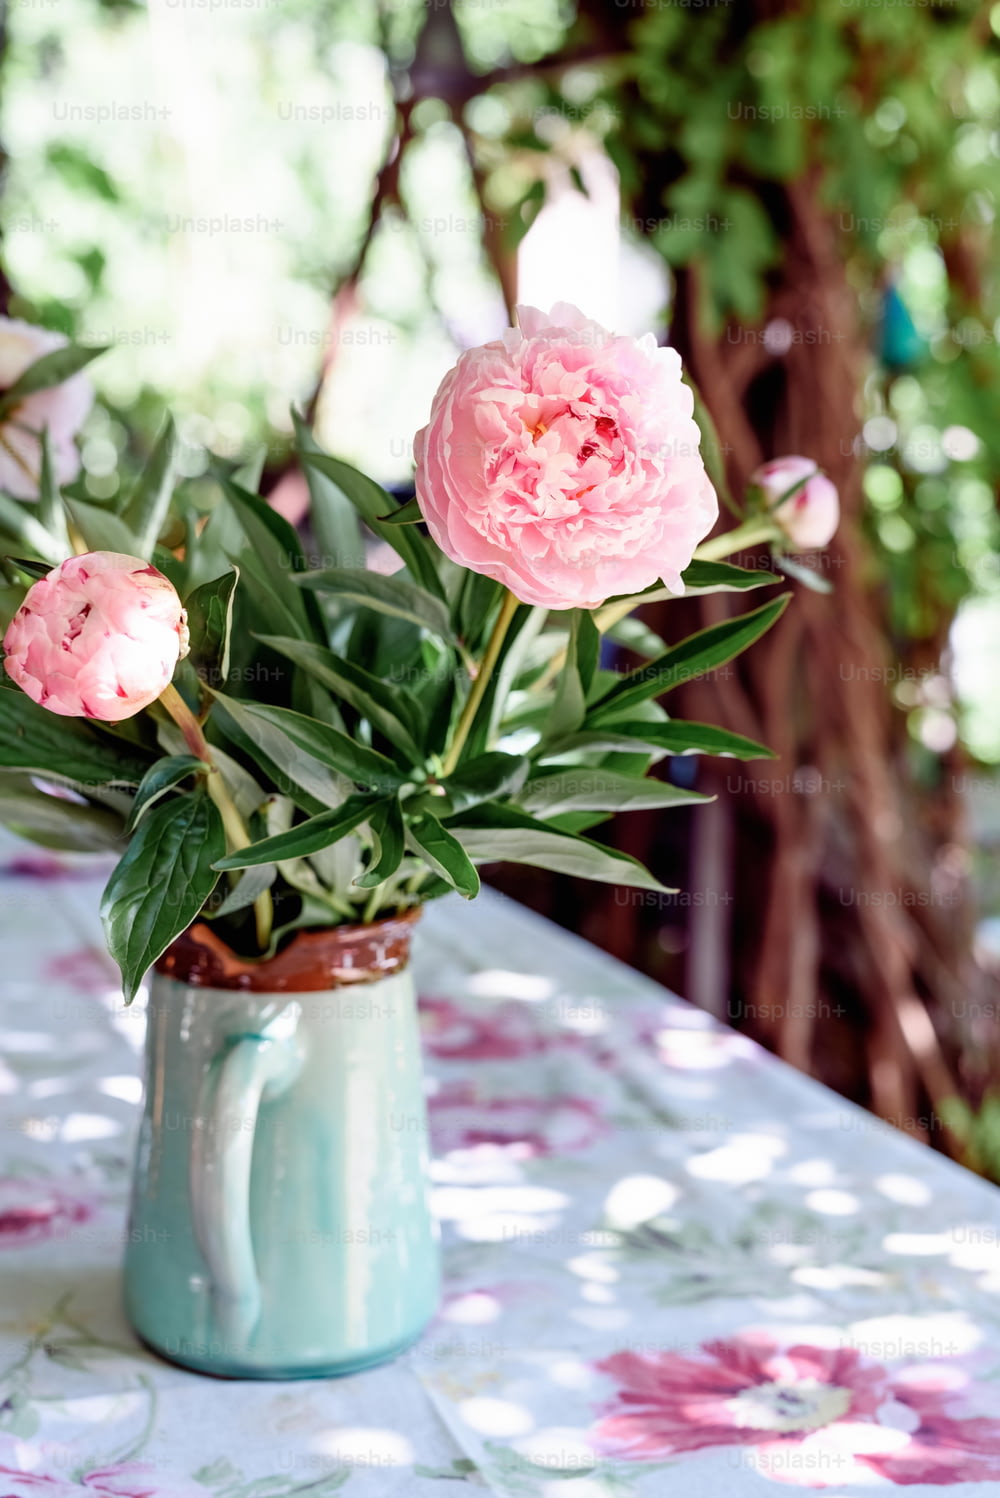 Un jarrón lleno de flores rosadas encima de una mesa